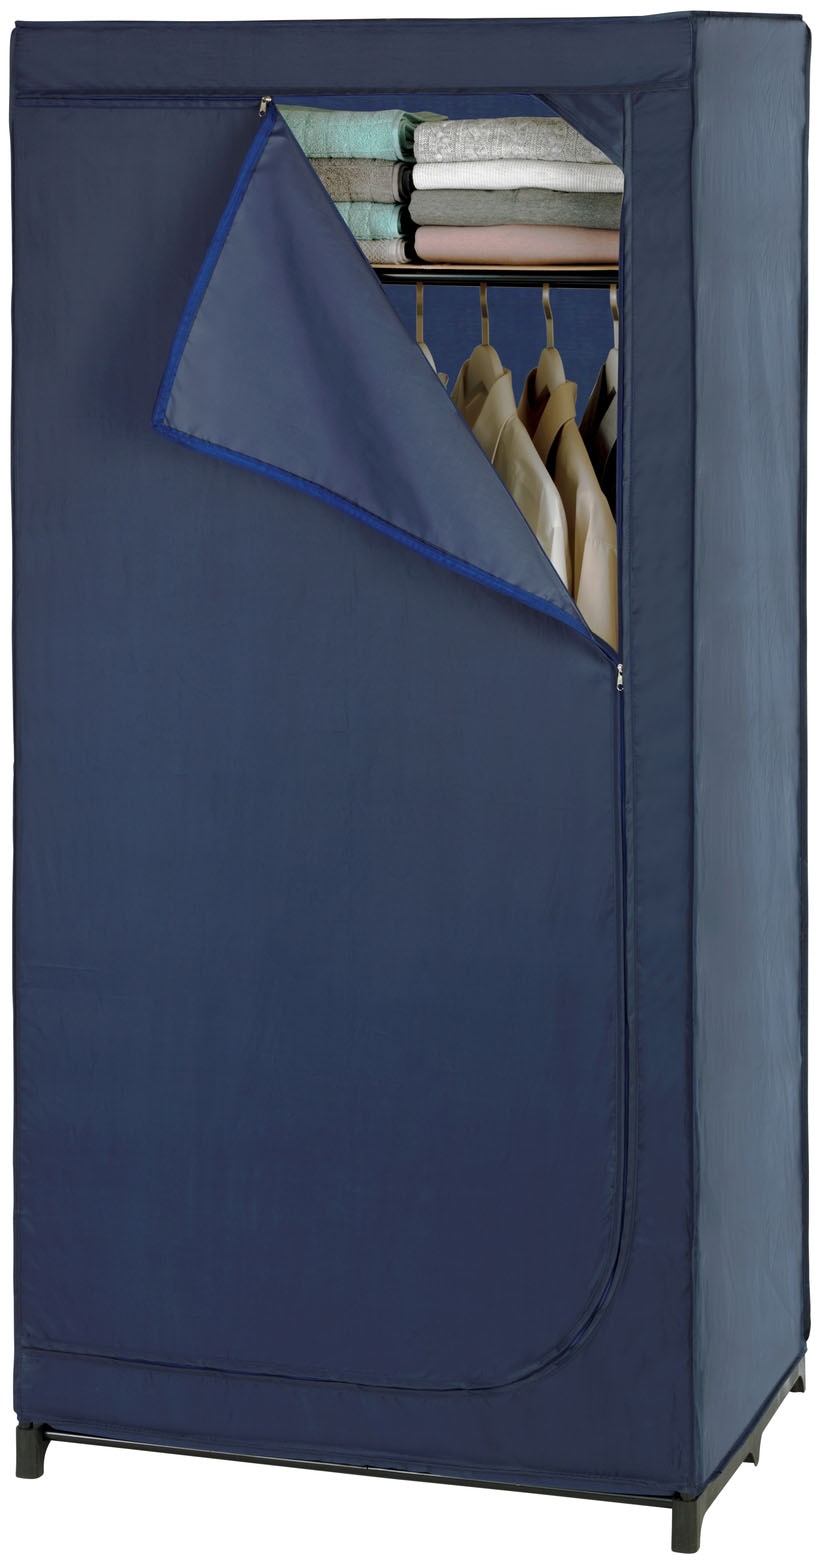 WENKO Kleiderschrank "Business", Polyester-Qualität, mit Ablage, Höhe 160 cm